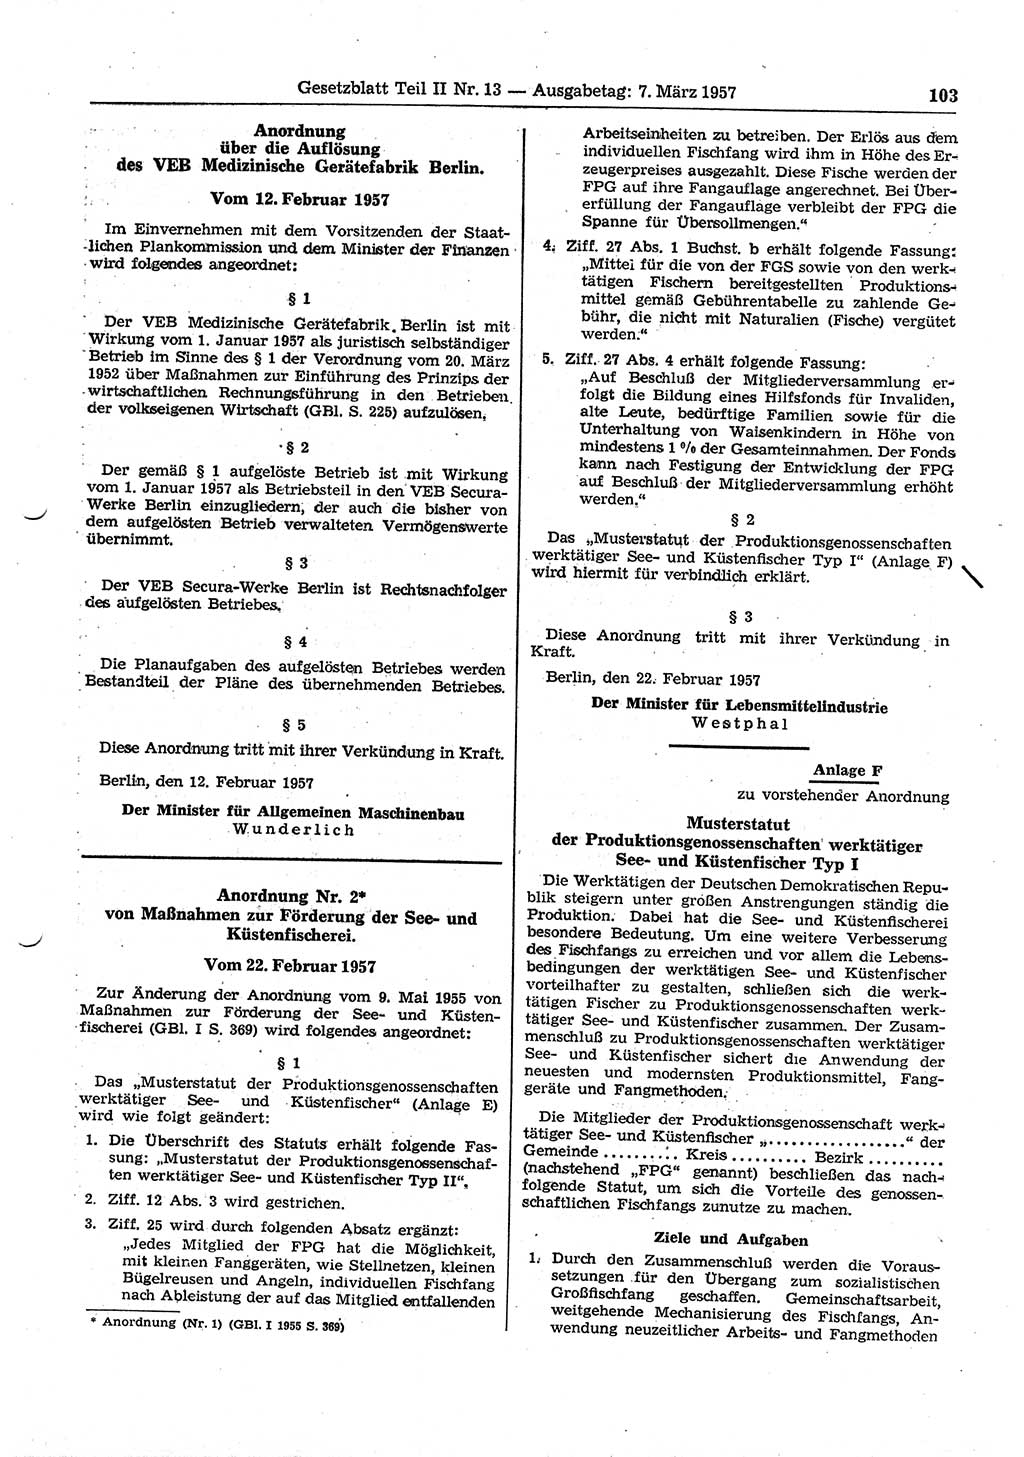 Gesetzblatt (GBl.) der Deutschen Demokratischen Republik (DDR) Teil ⅠⅠ 1957, Seite 103 (GBl. DDR ⅠⅠ 1957, S. 103)